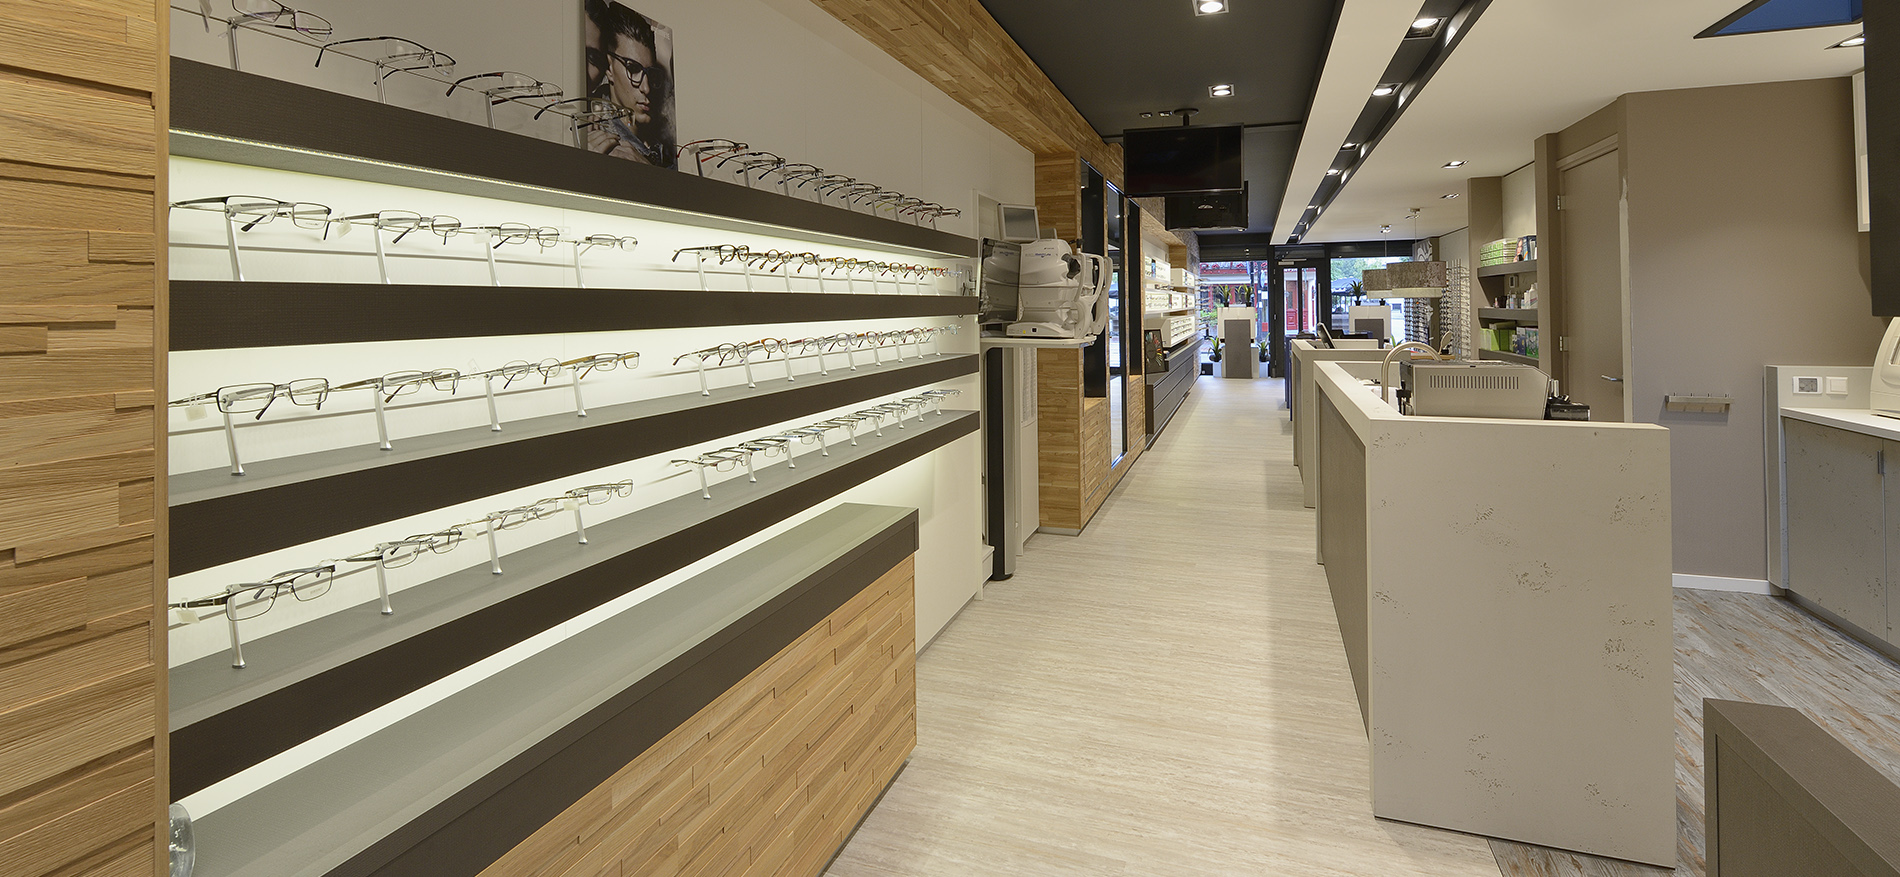 Brilmode Zeist – Ladeneinrichtung Augenoptiker - 